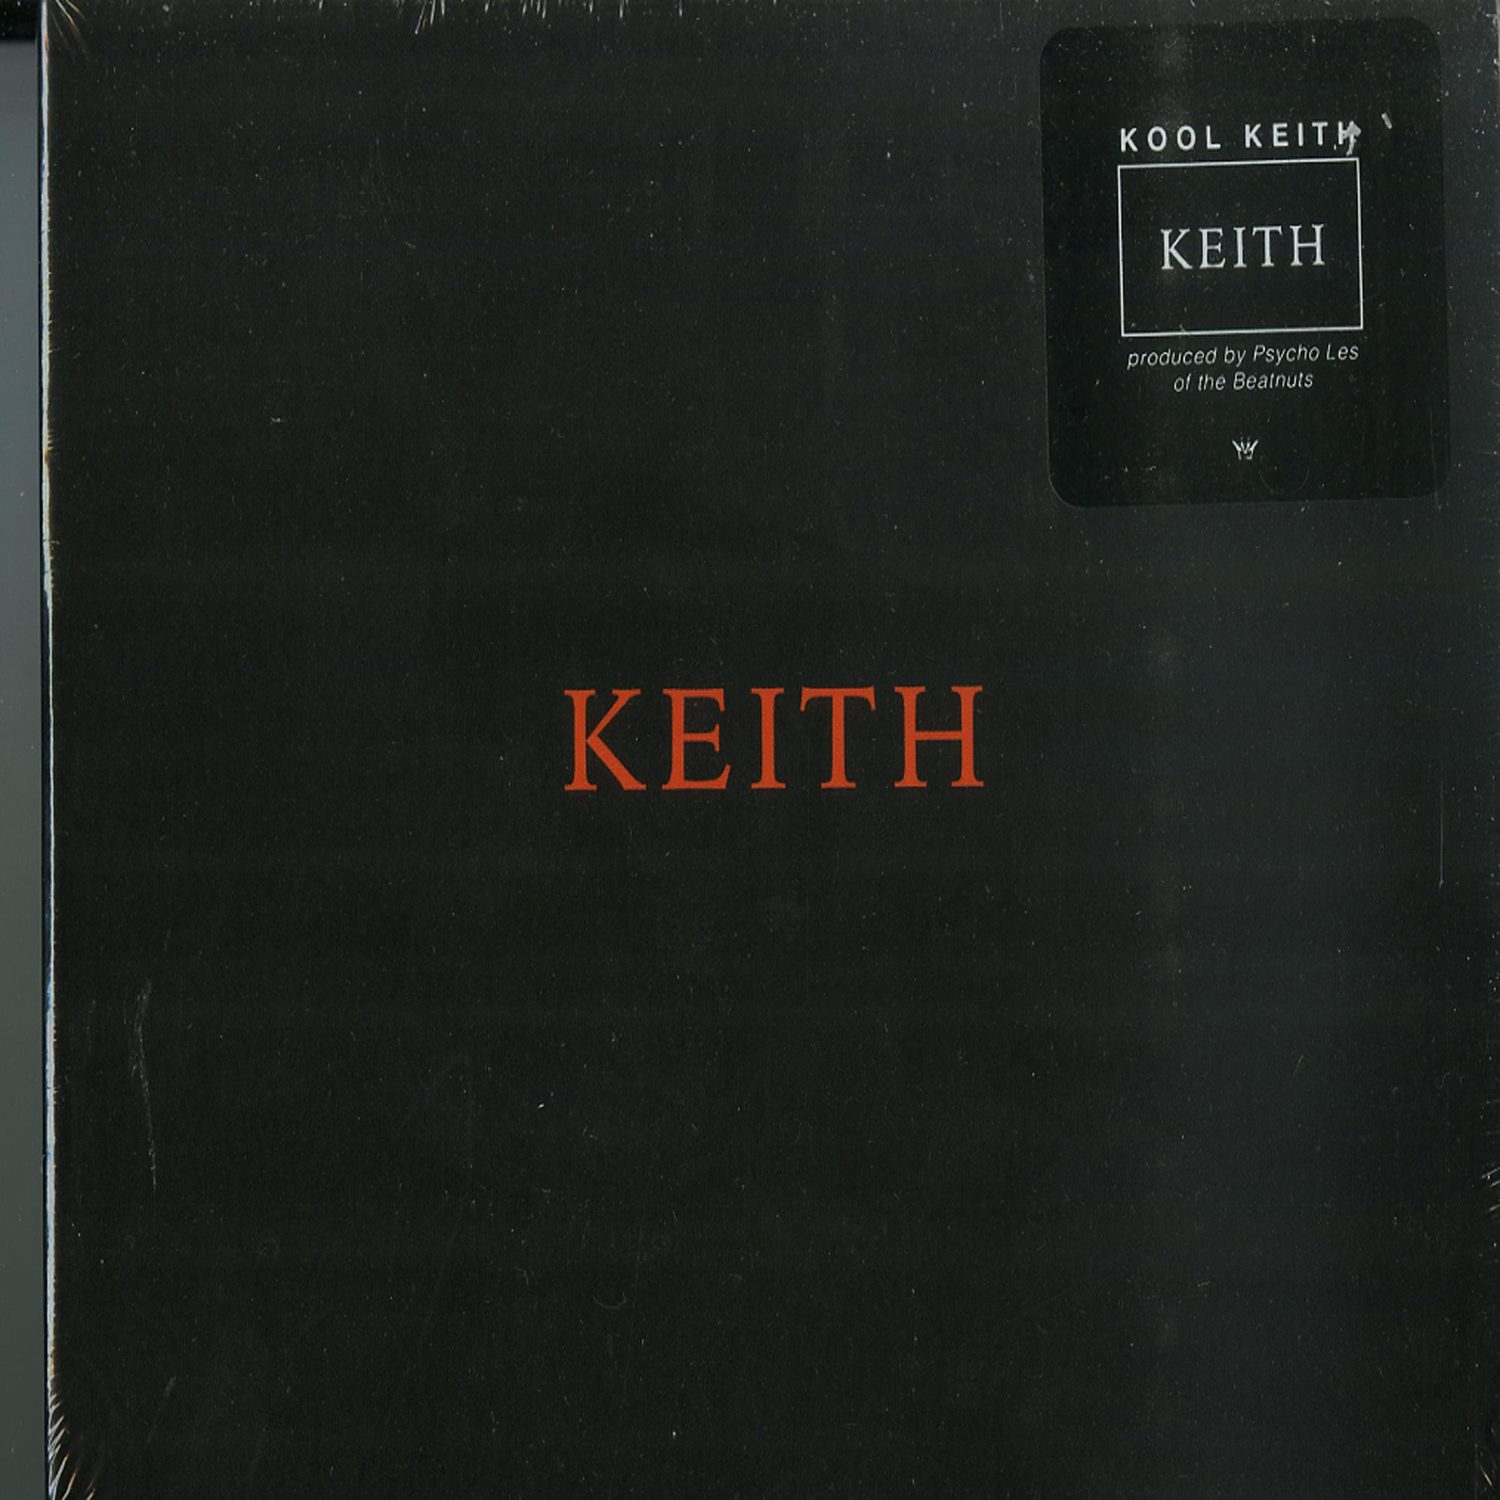 Kool Keith - KEITH 